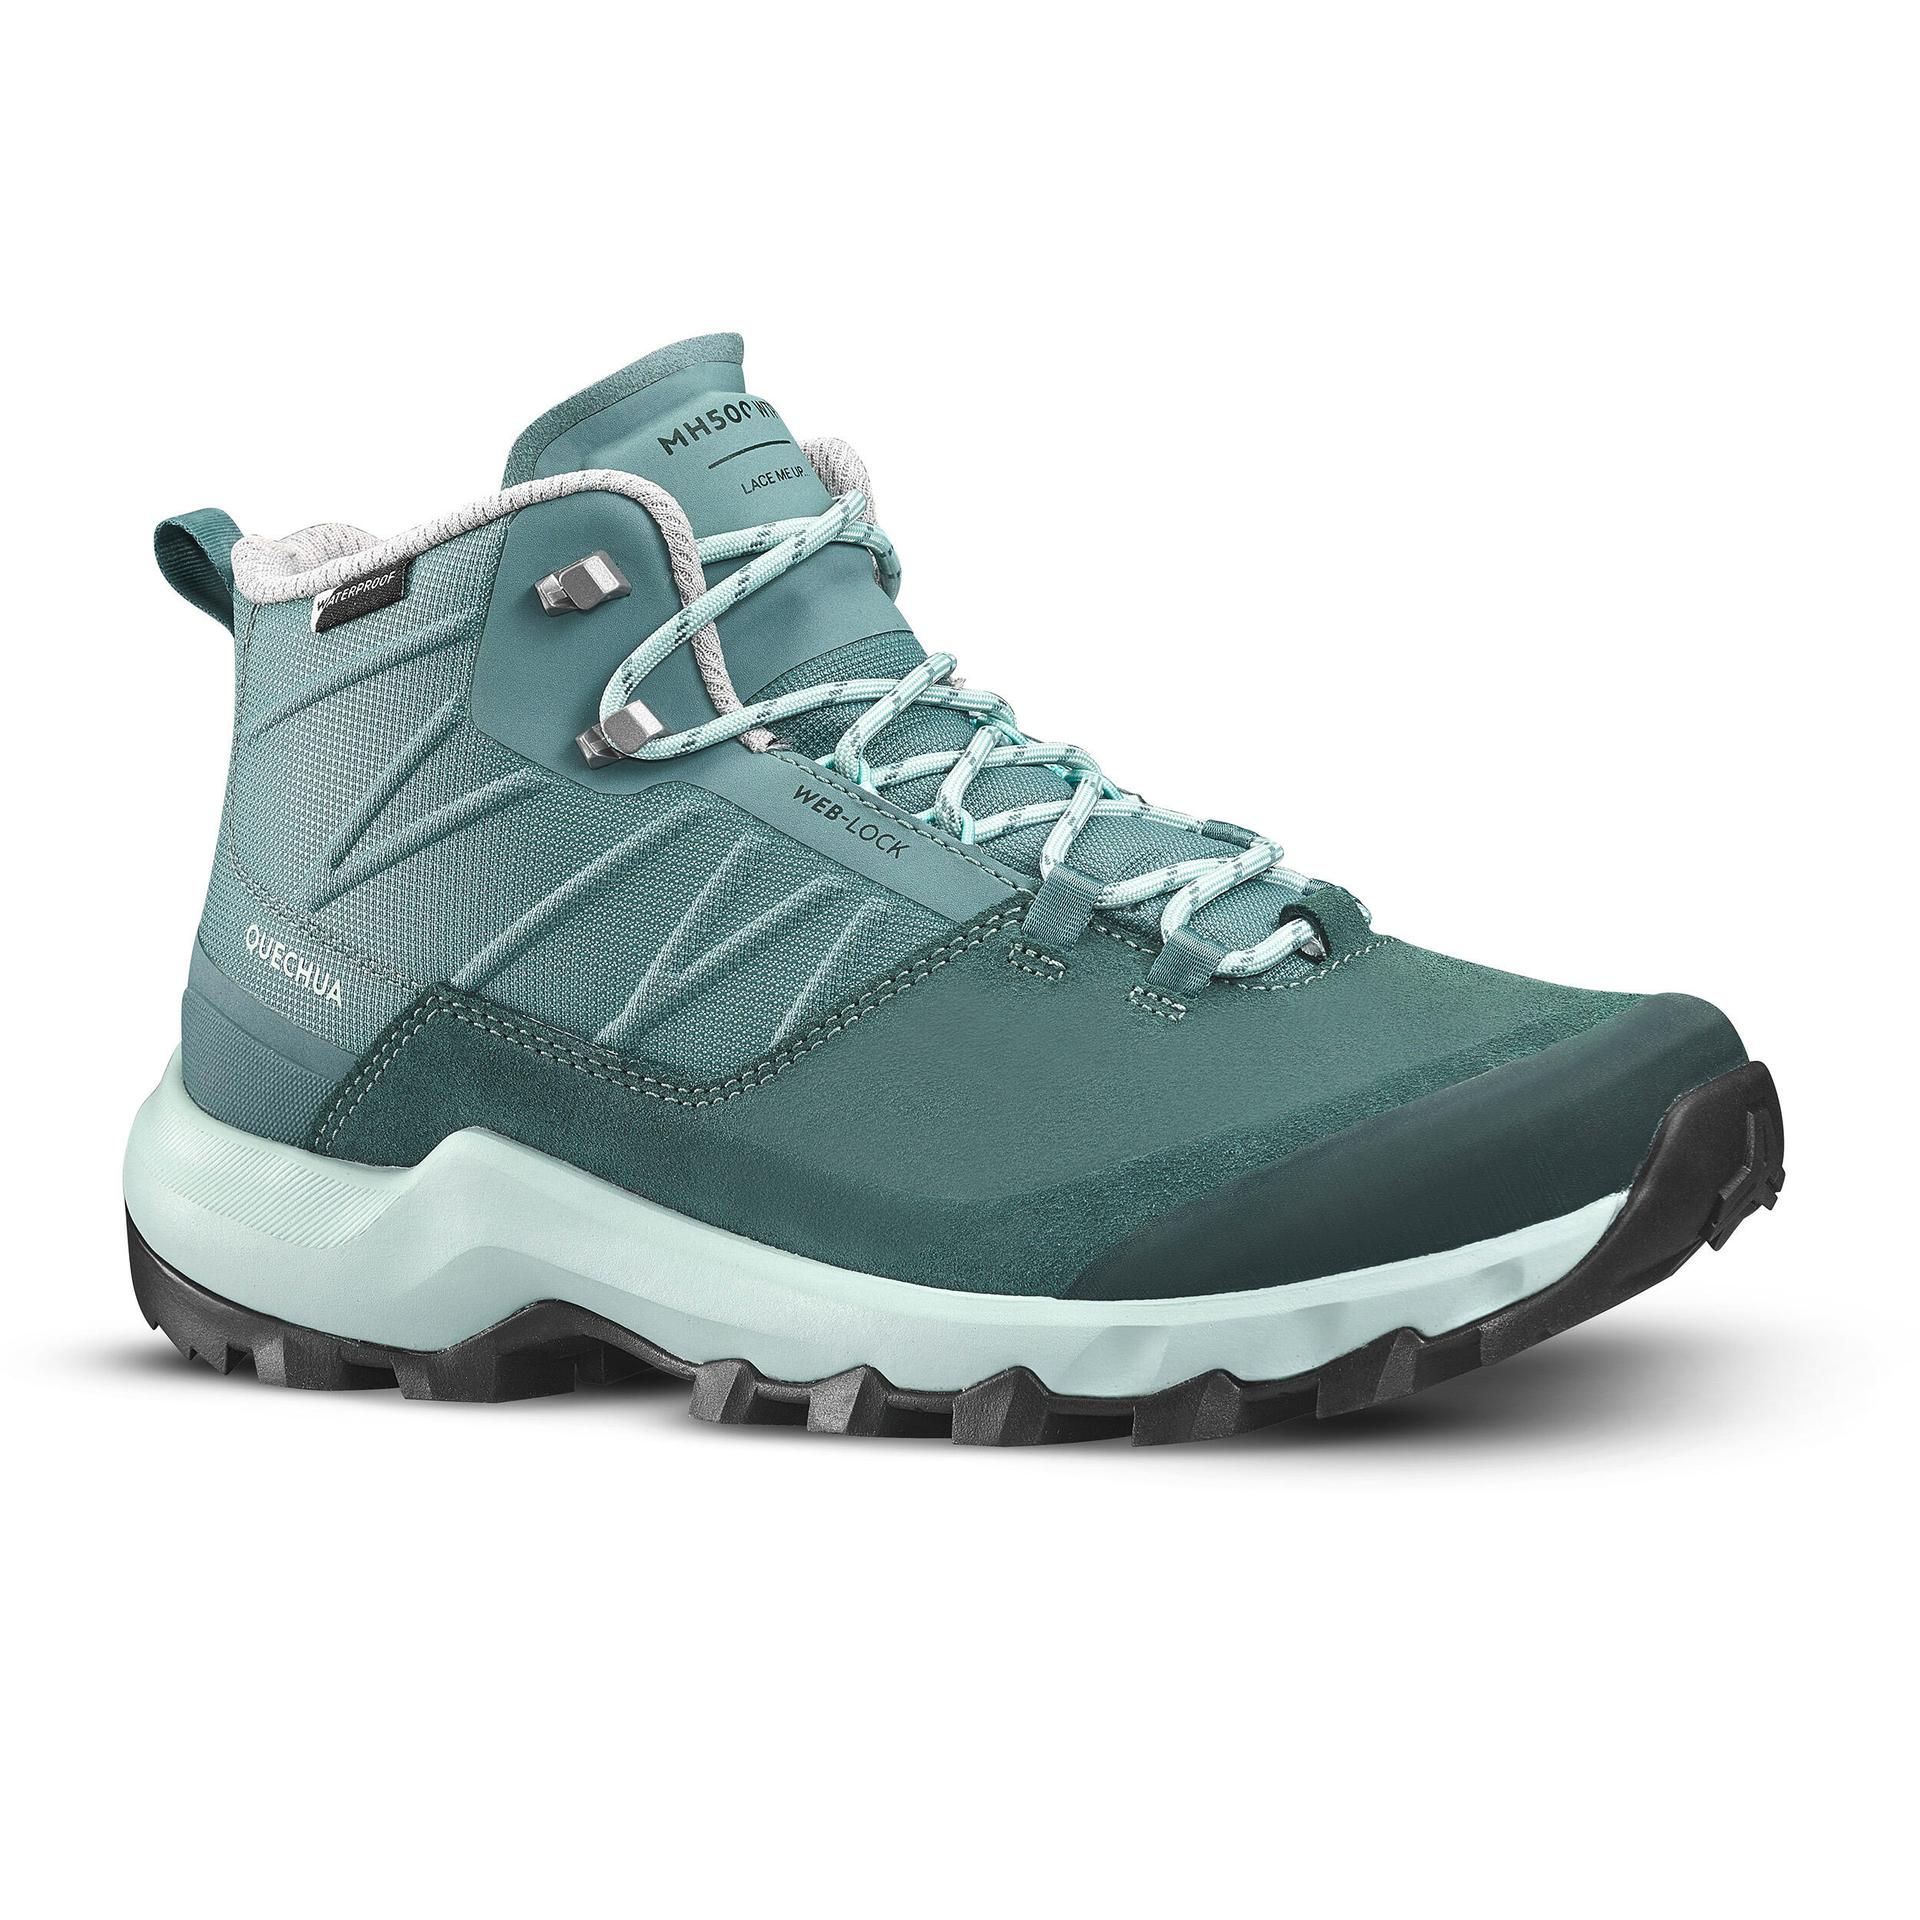 women's waterproof mountain walking boots - mh500 mid - green